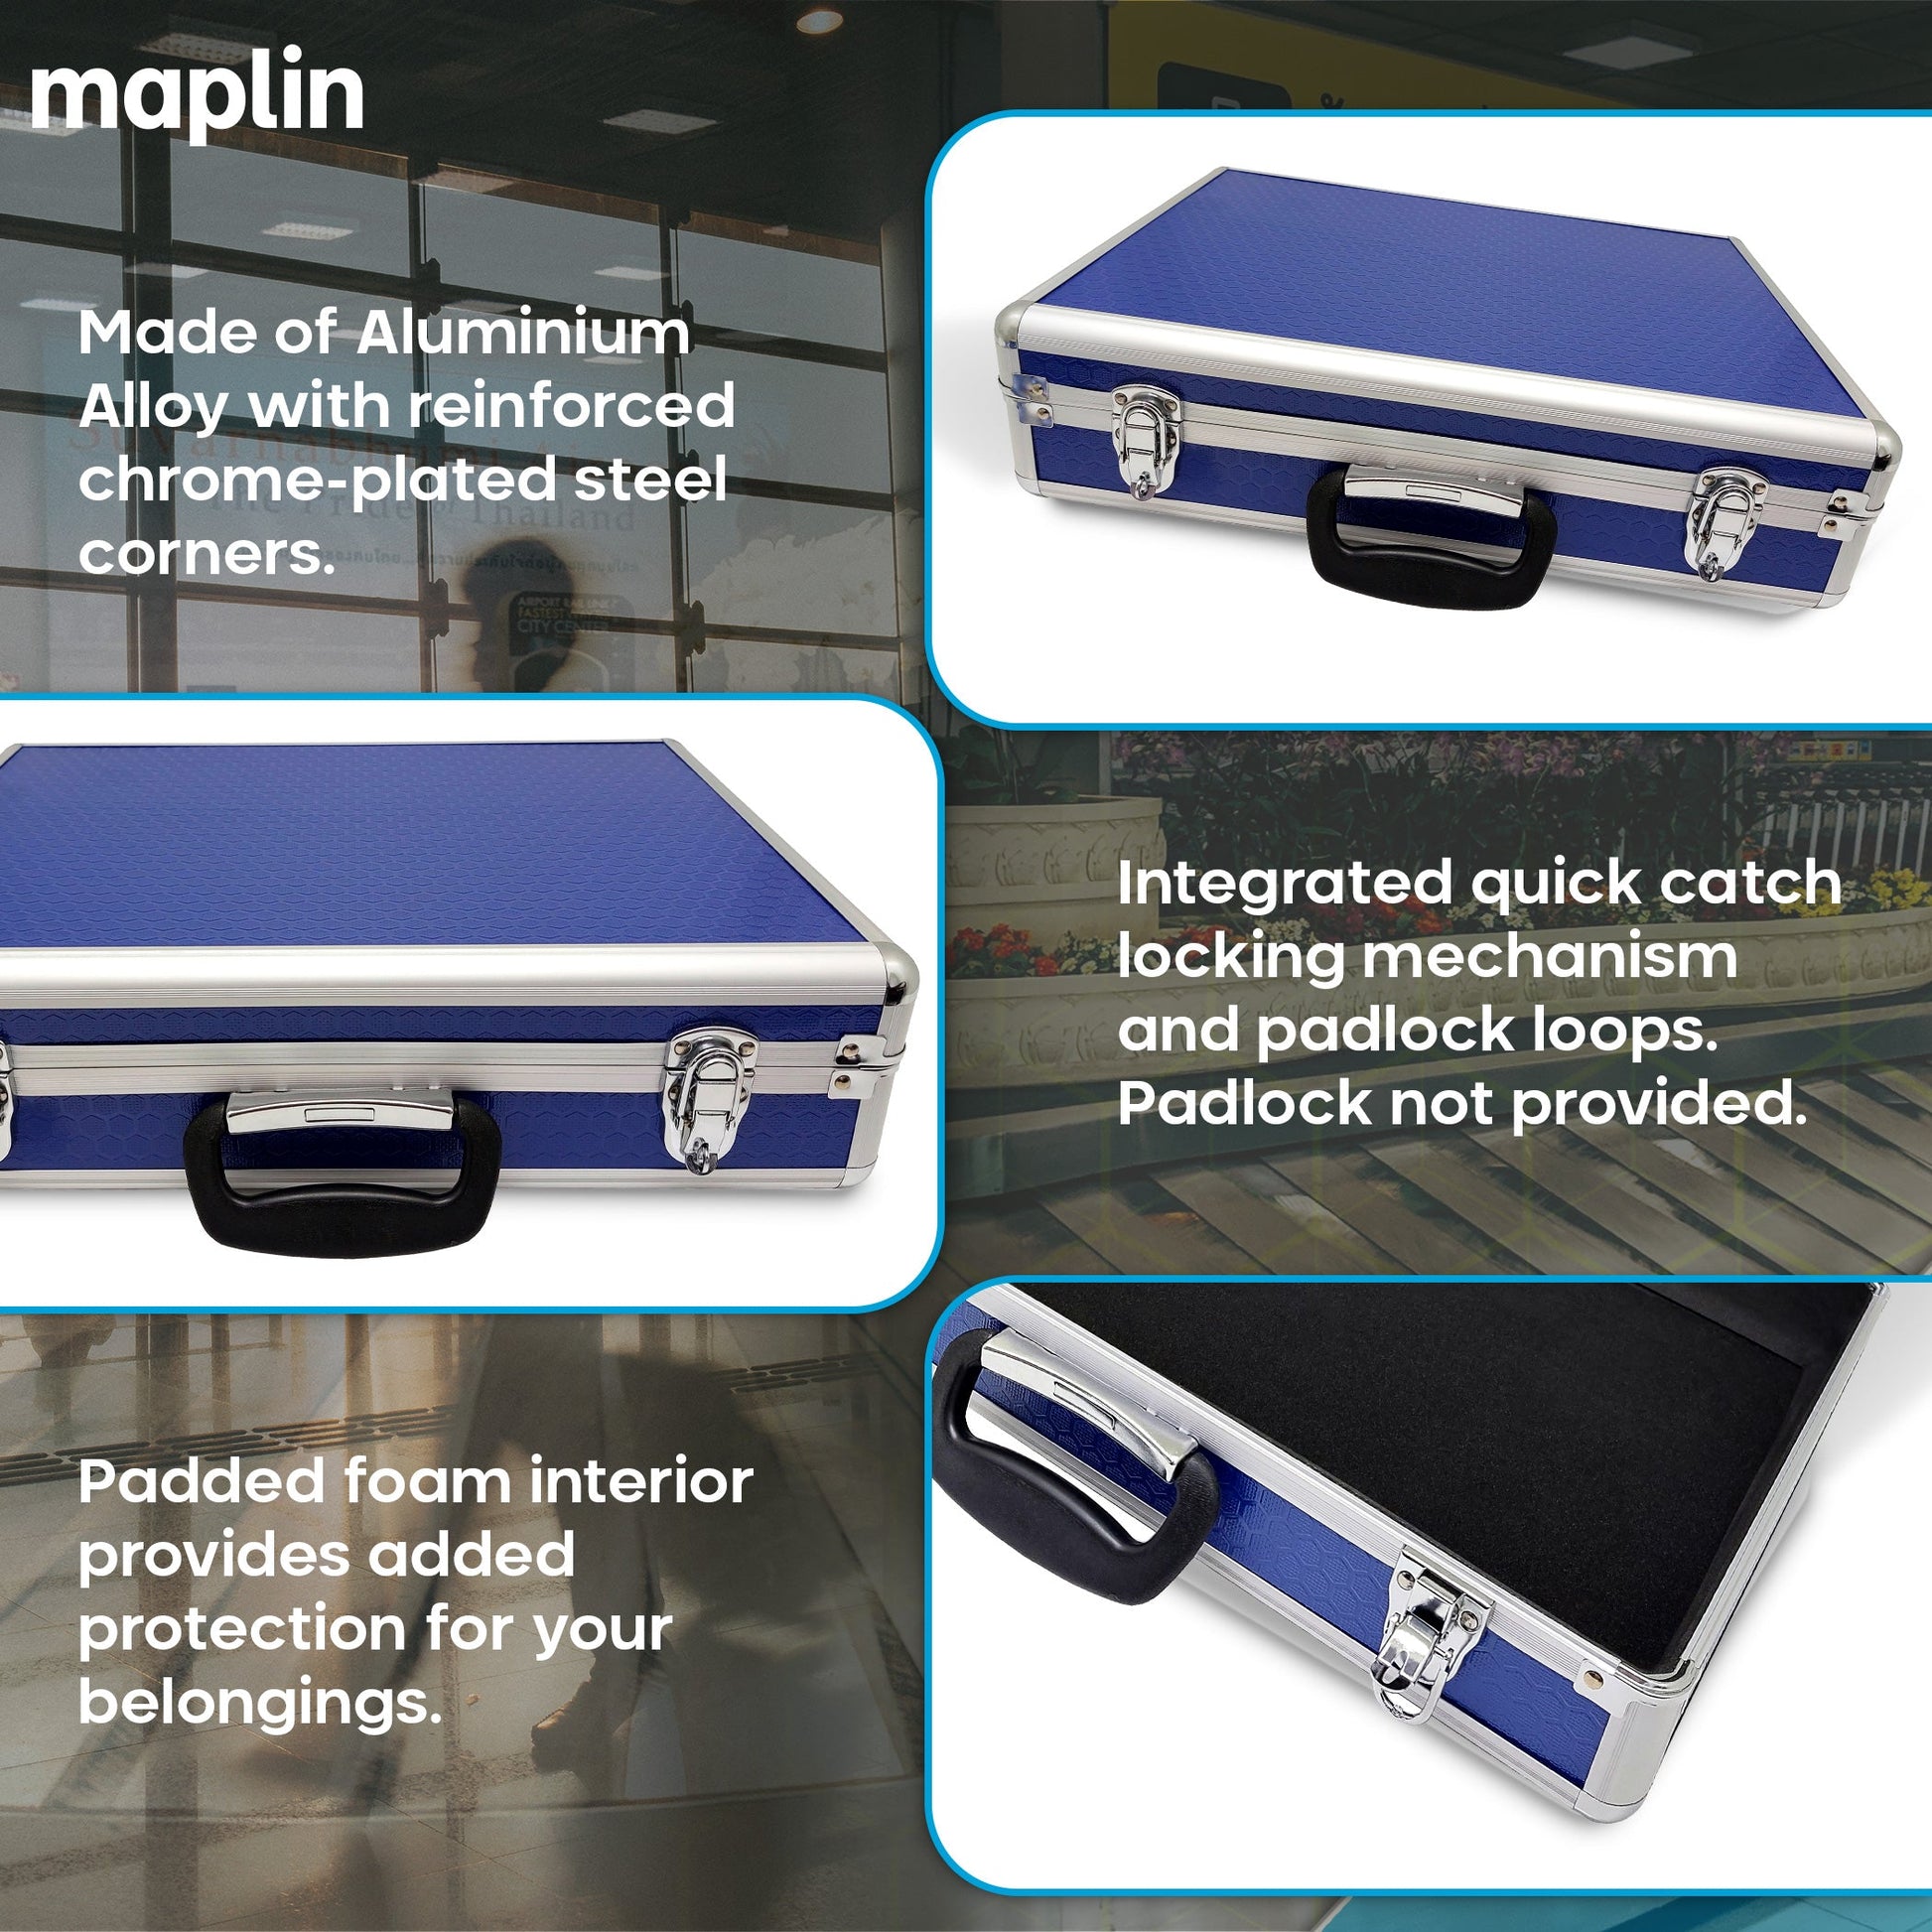 Maplin Plus 115 x 460 x 340mm Flight Case - Blue & Silver - maplin.co.uk